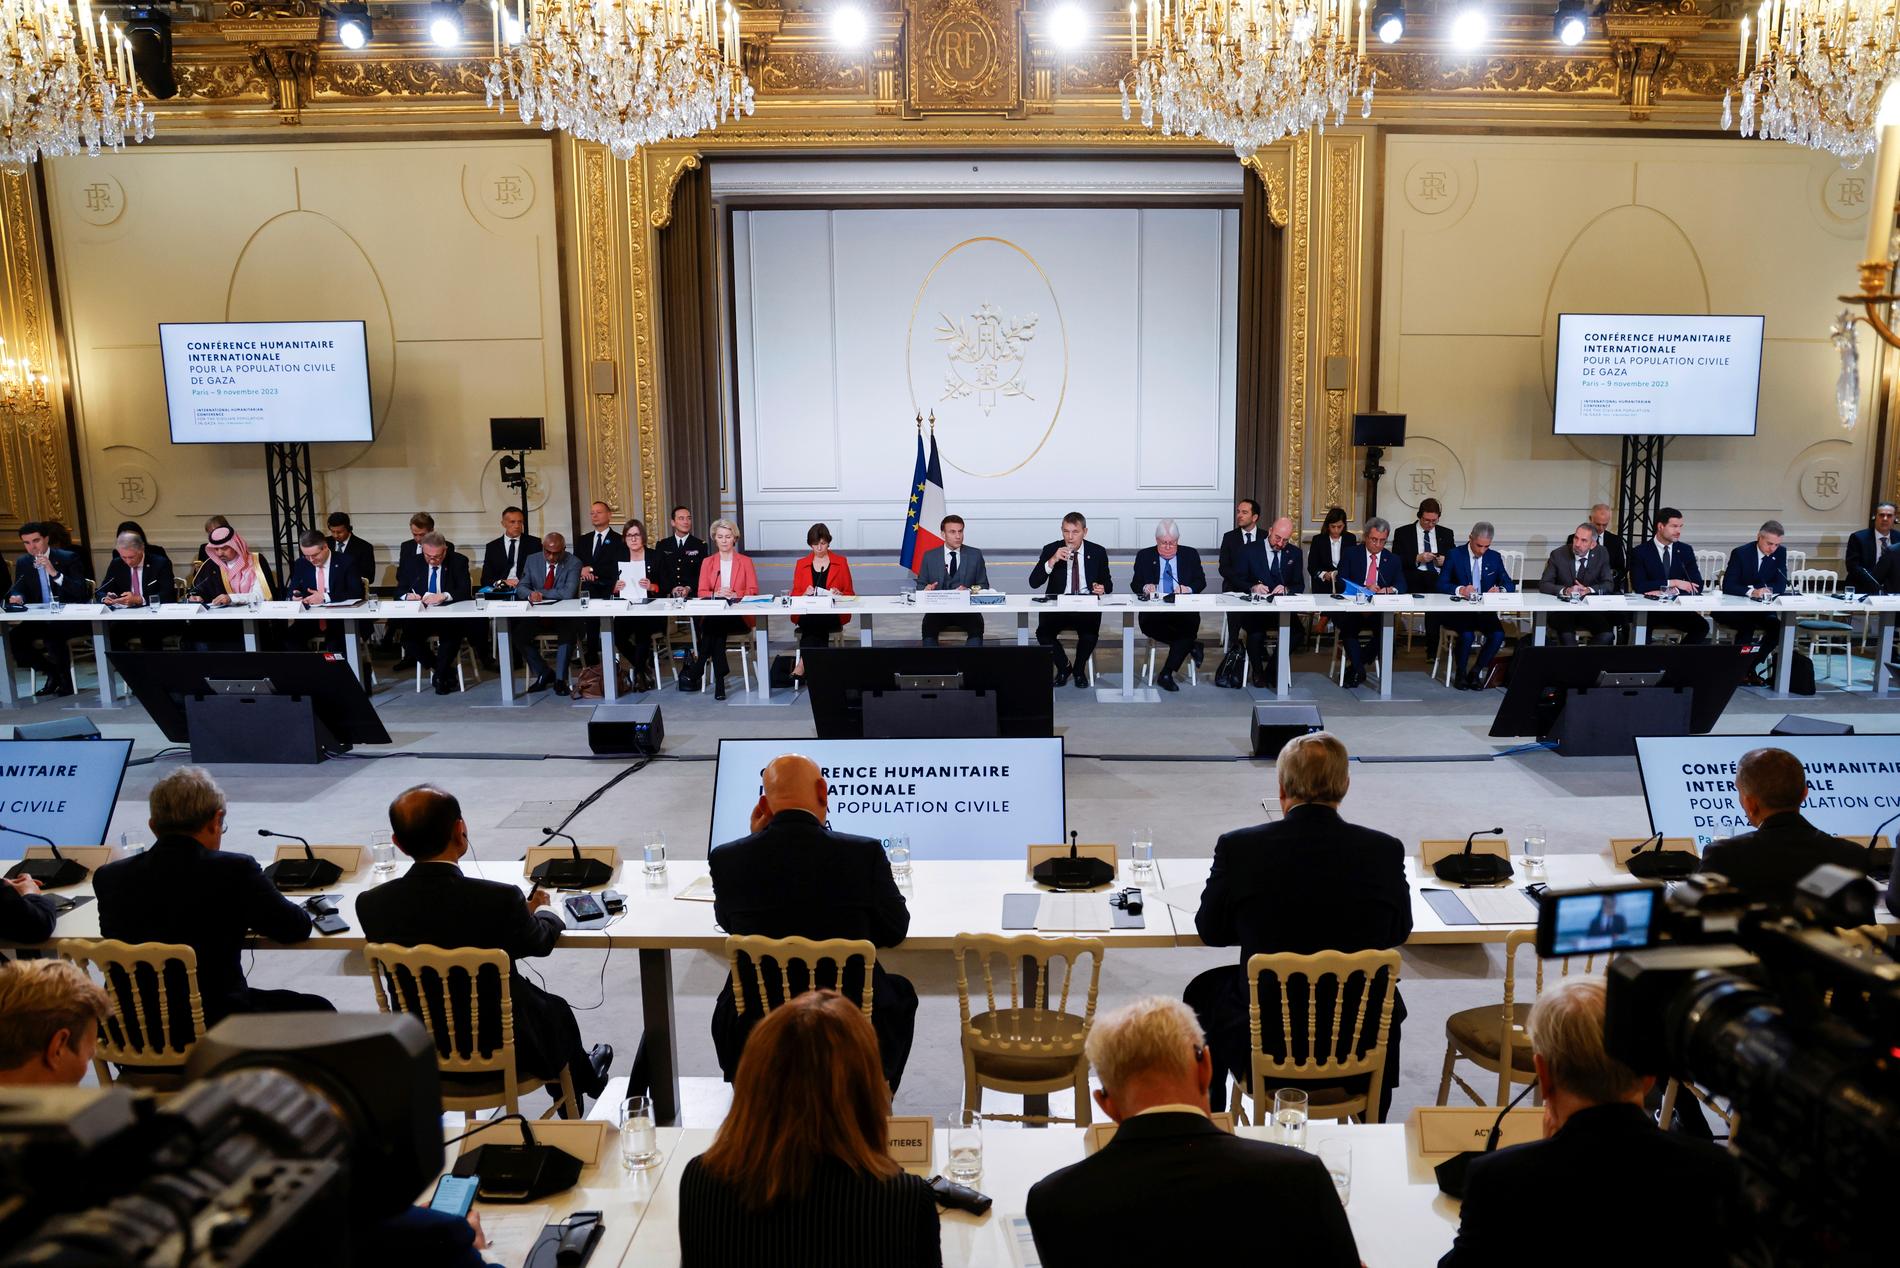 Hjälp till Gazaremsan diskuteras under torsdagens möte i Paris, där över 50 länder deltar.